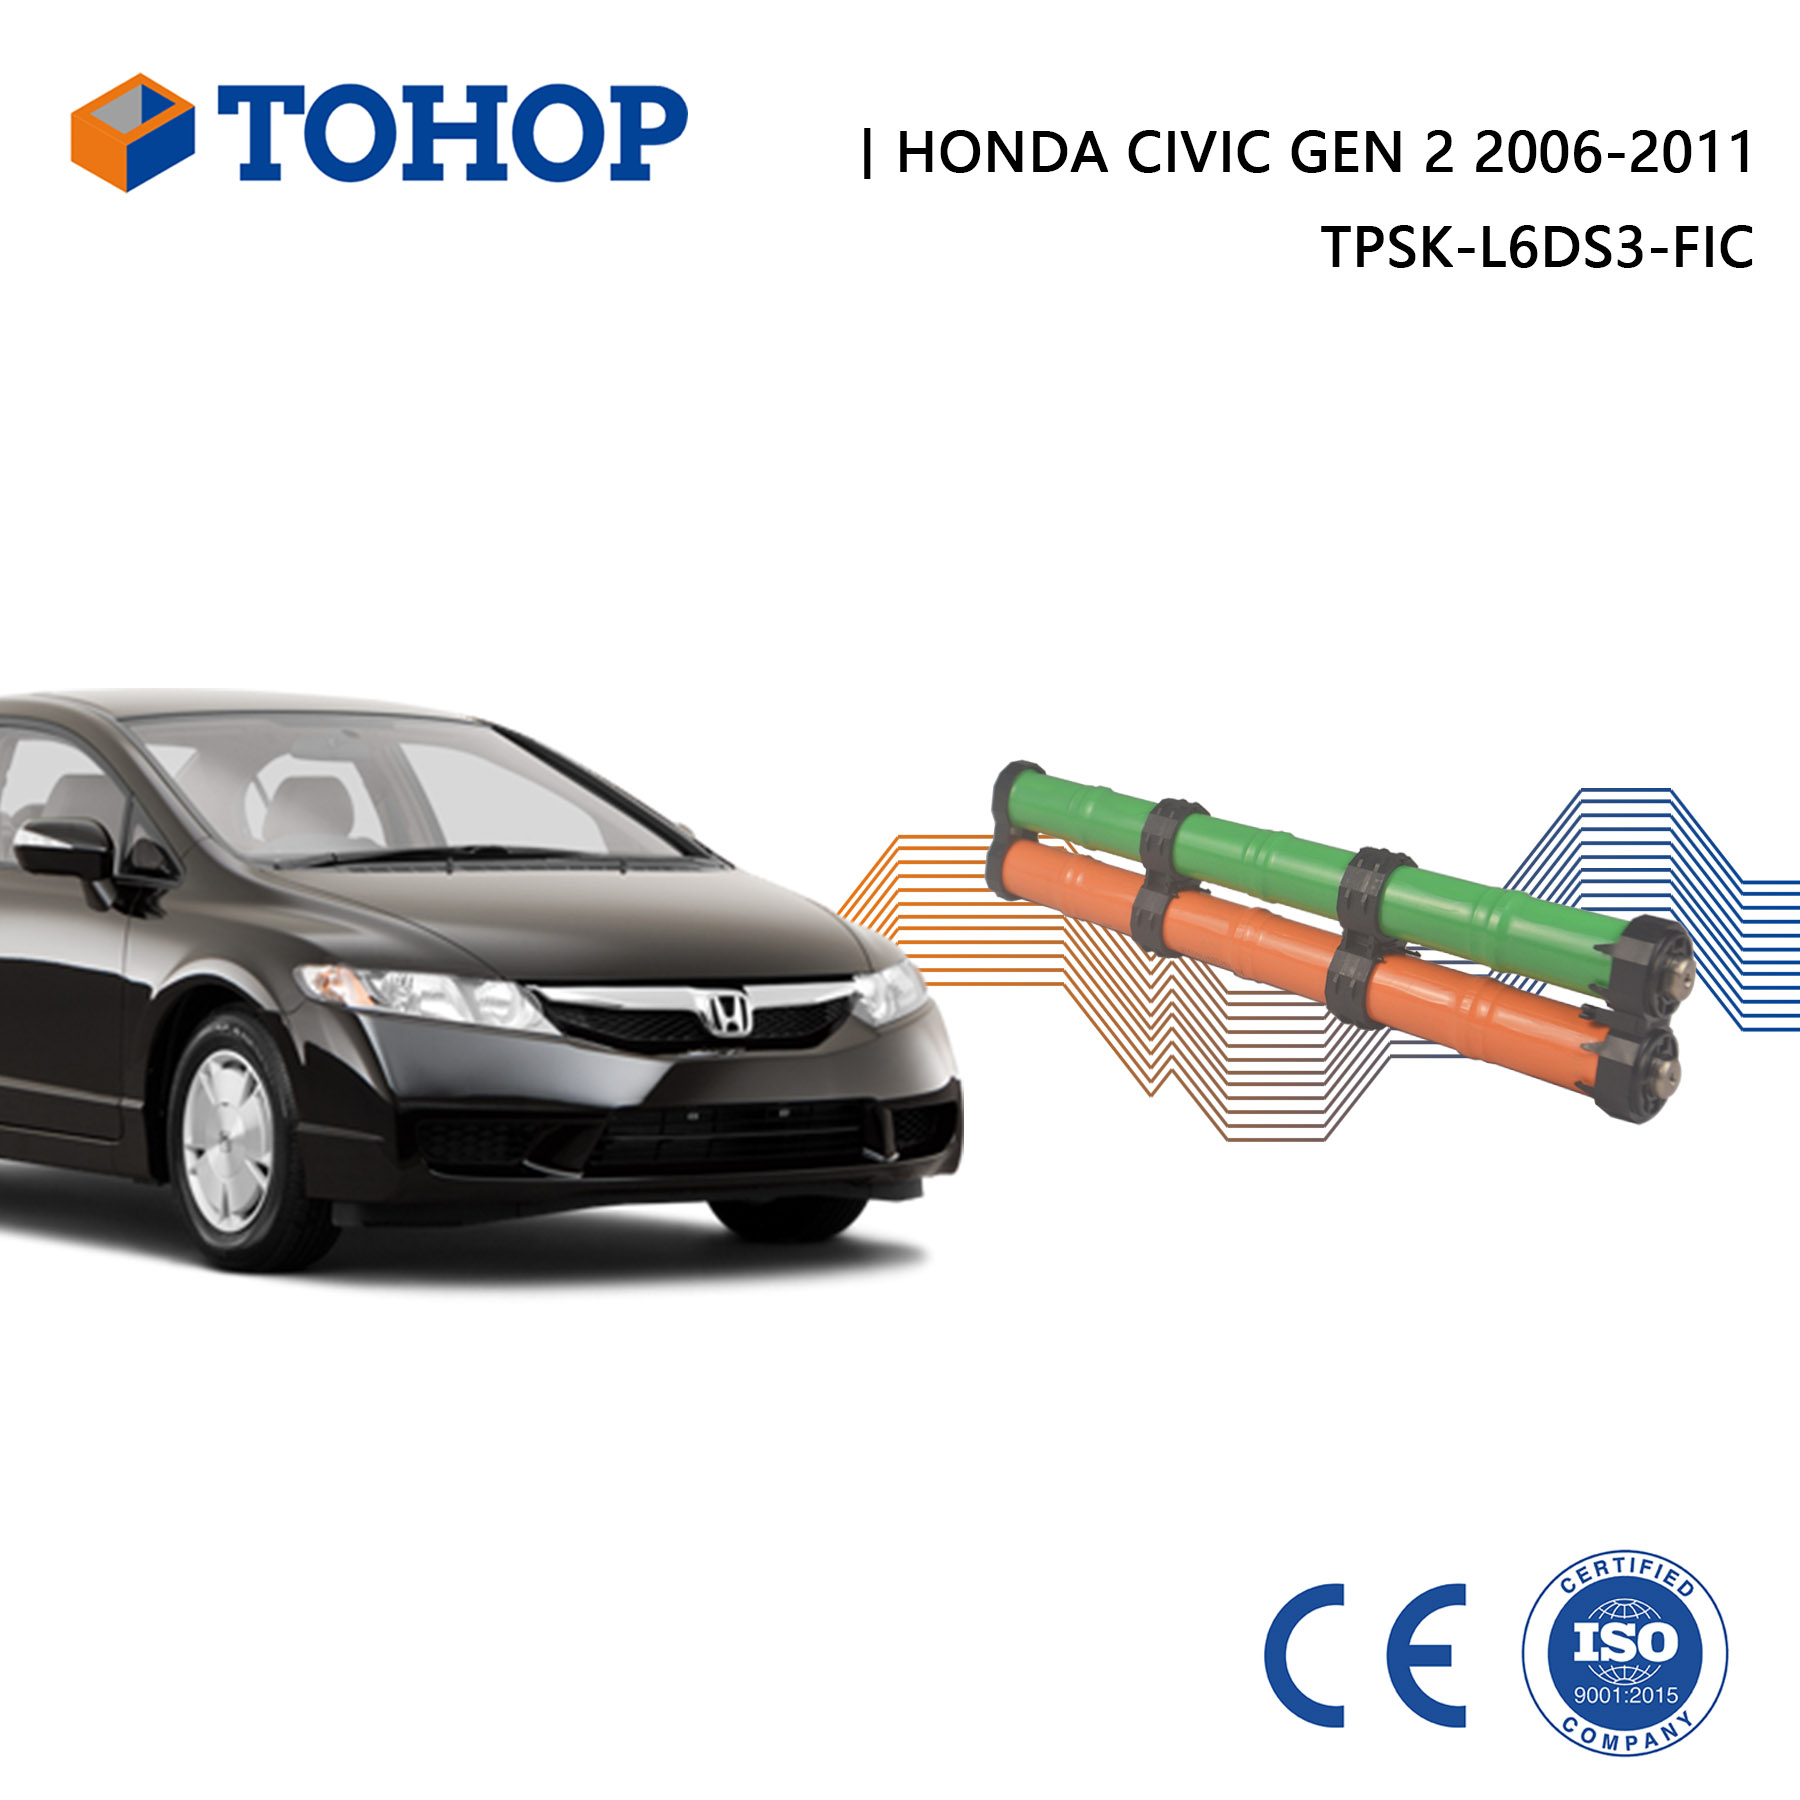 Nuovissima sostituzione della batteria ibrida Honda Civic Gen 2 da 14,4 V 6,5 Ah